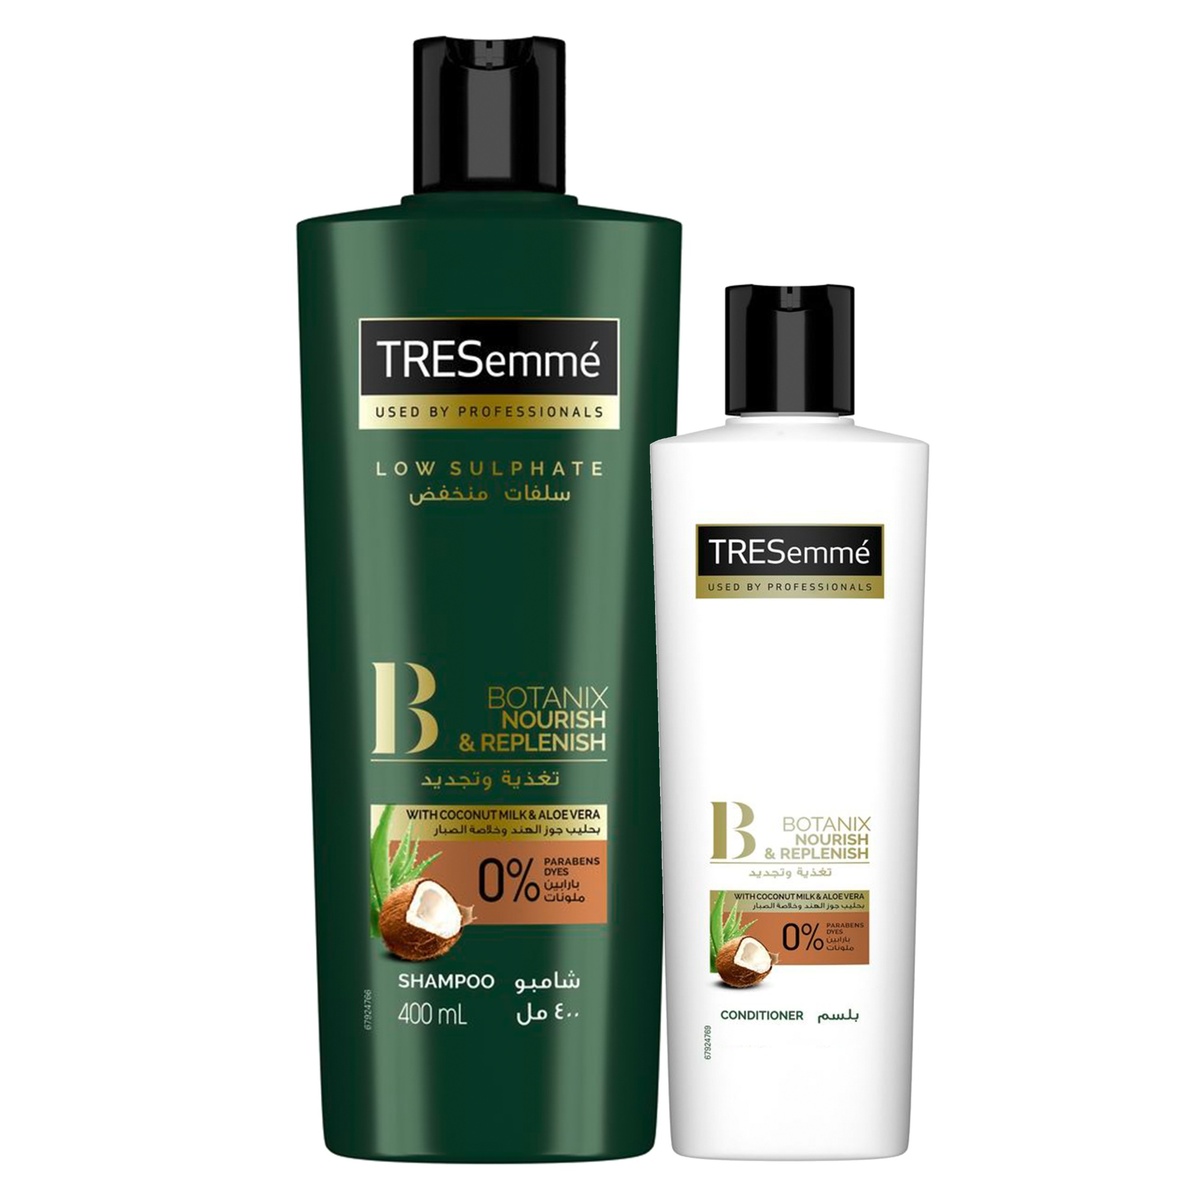 Buy TRESemme Shampoo Botanix 400ml + Conditioner 180ml Online at Best Price | Shampoo | Lulu Kuwait in Kuwait